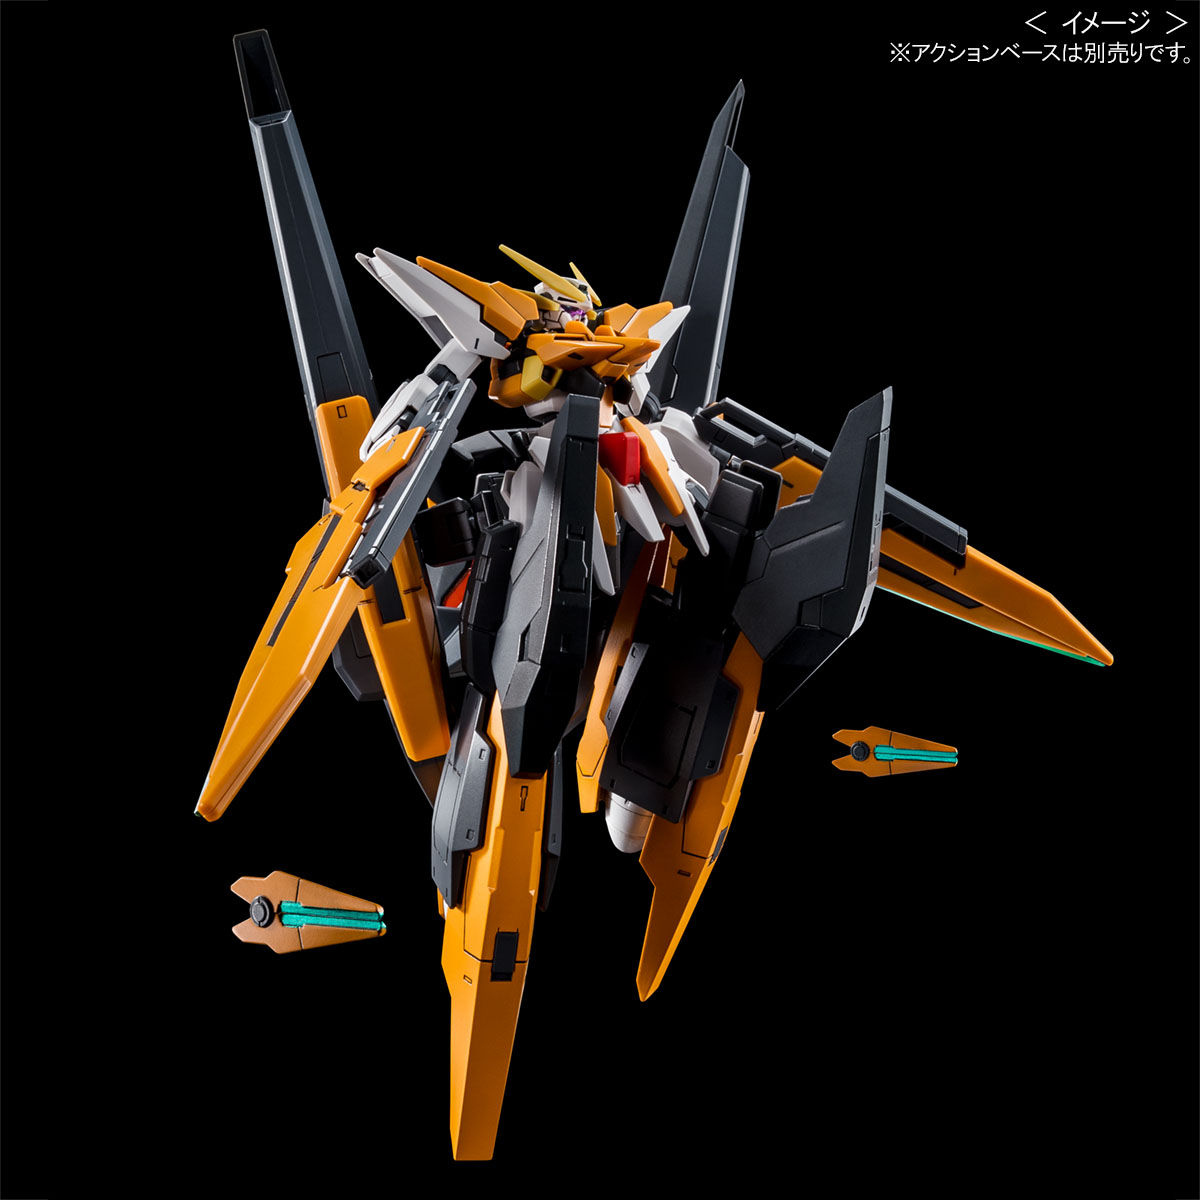 HG00 1/144 GN-011 Gundam Harute(Final Battle)